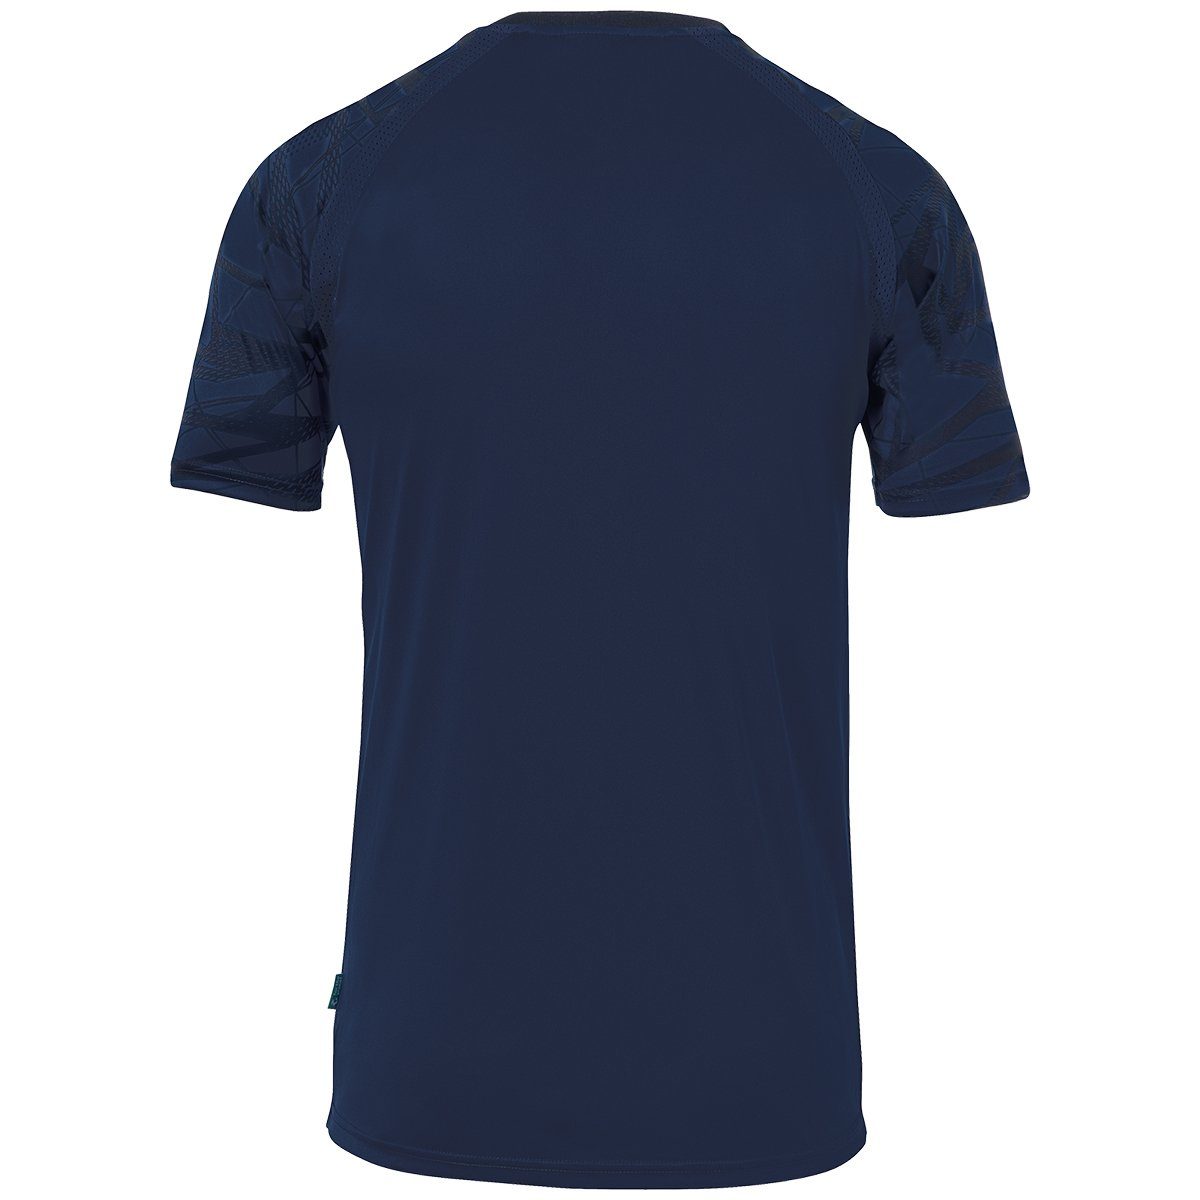 GOAL uhlsport 25 uhlsport Trainingsshirt KURZARM TRIKOT atmungsaktiv marine/marine Trainings-T-Shirt